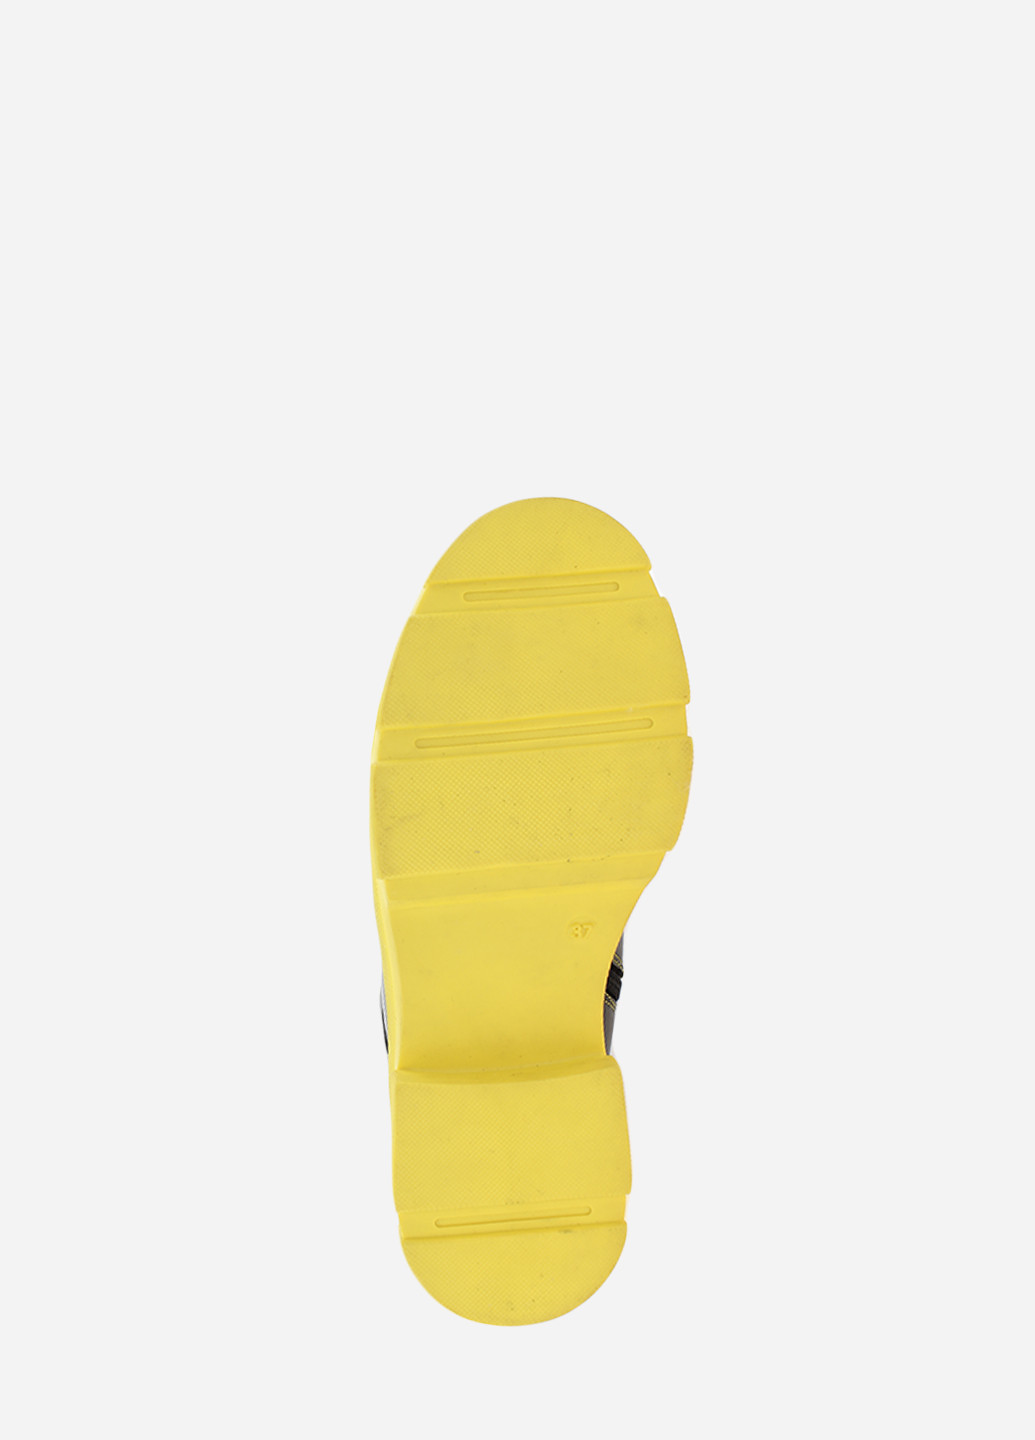 Зимние ботинки rhit700-1k черный Hitcher